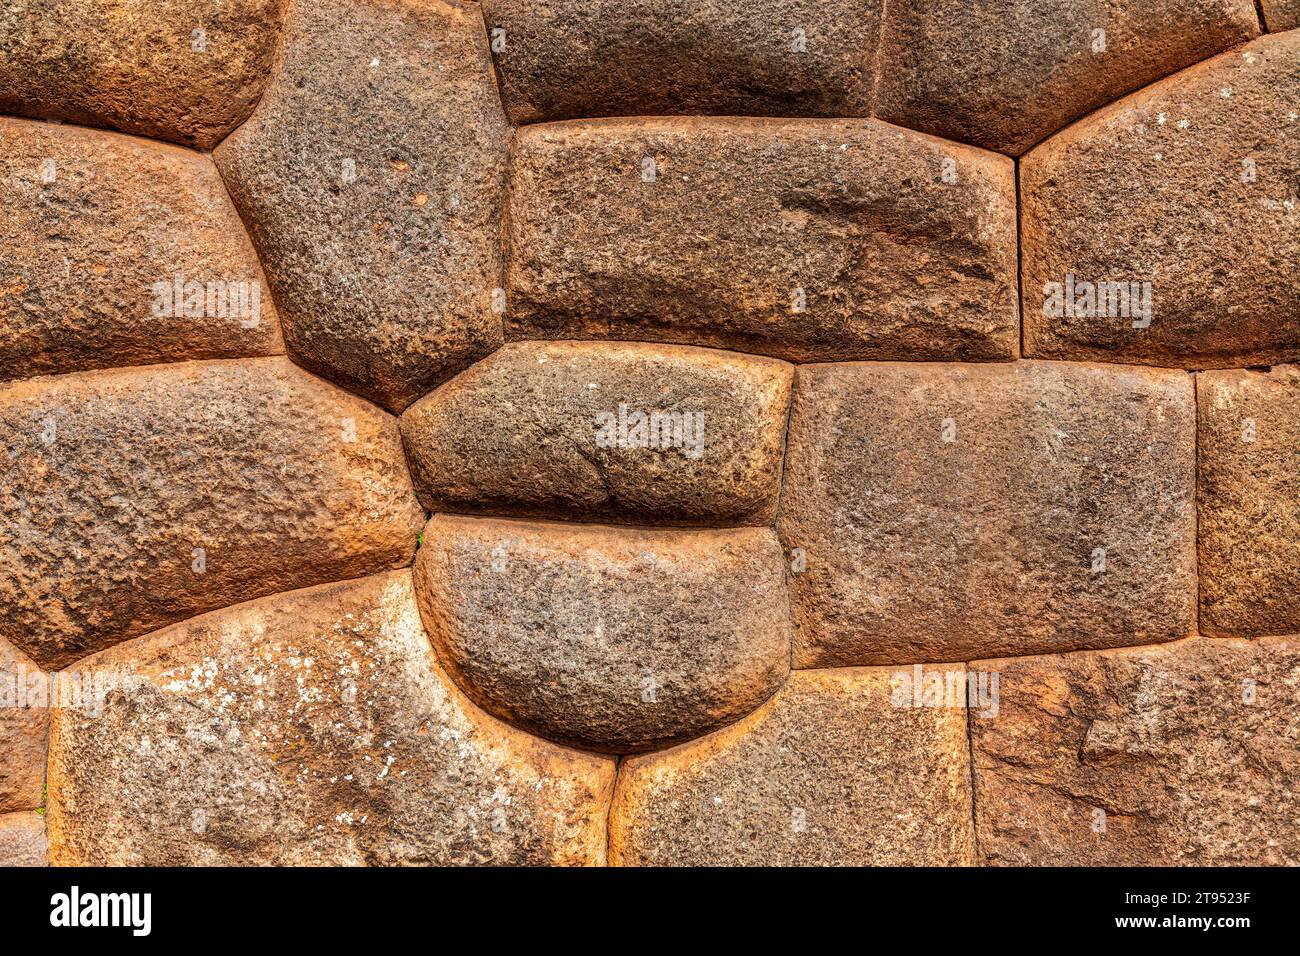 Inca Wall architecture in the Inca ruin of Chinchero near Cusco, Peru. Stock Photo